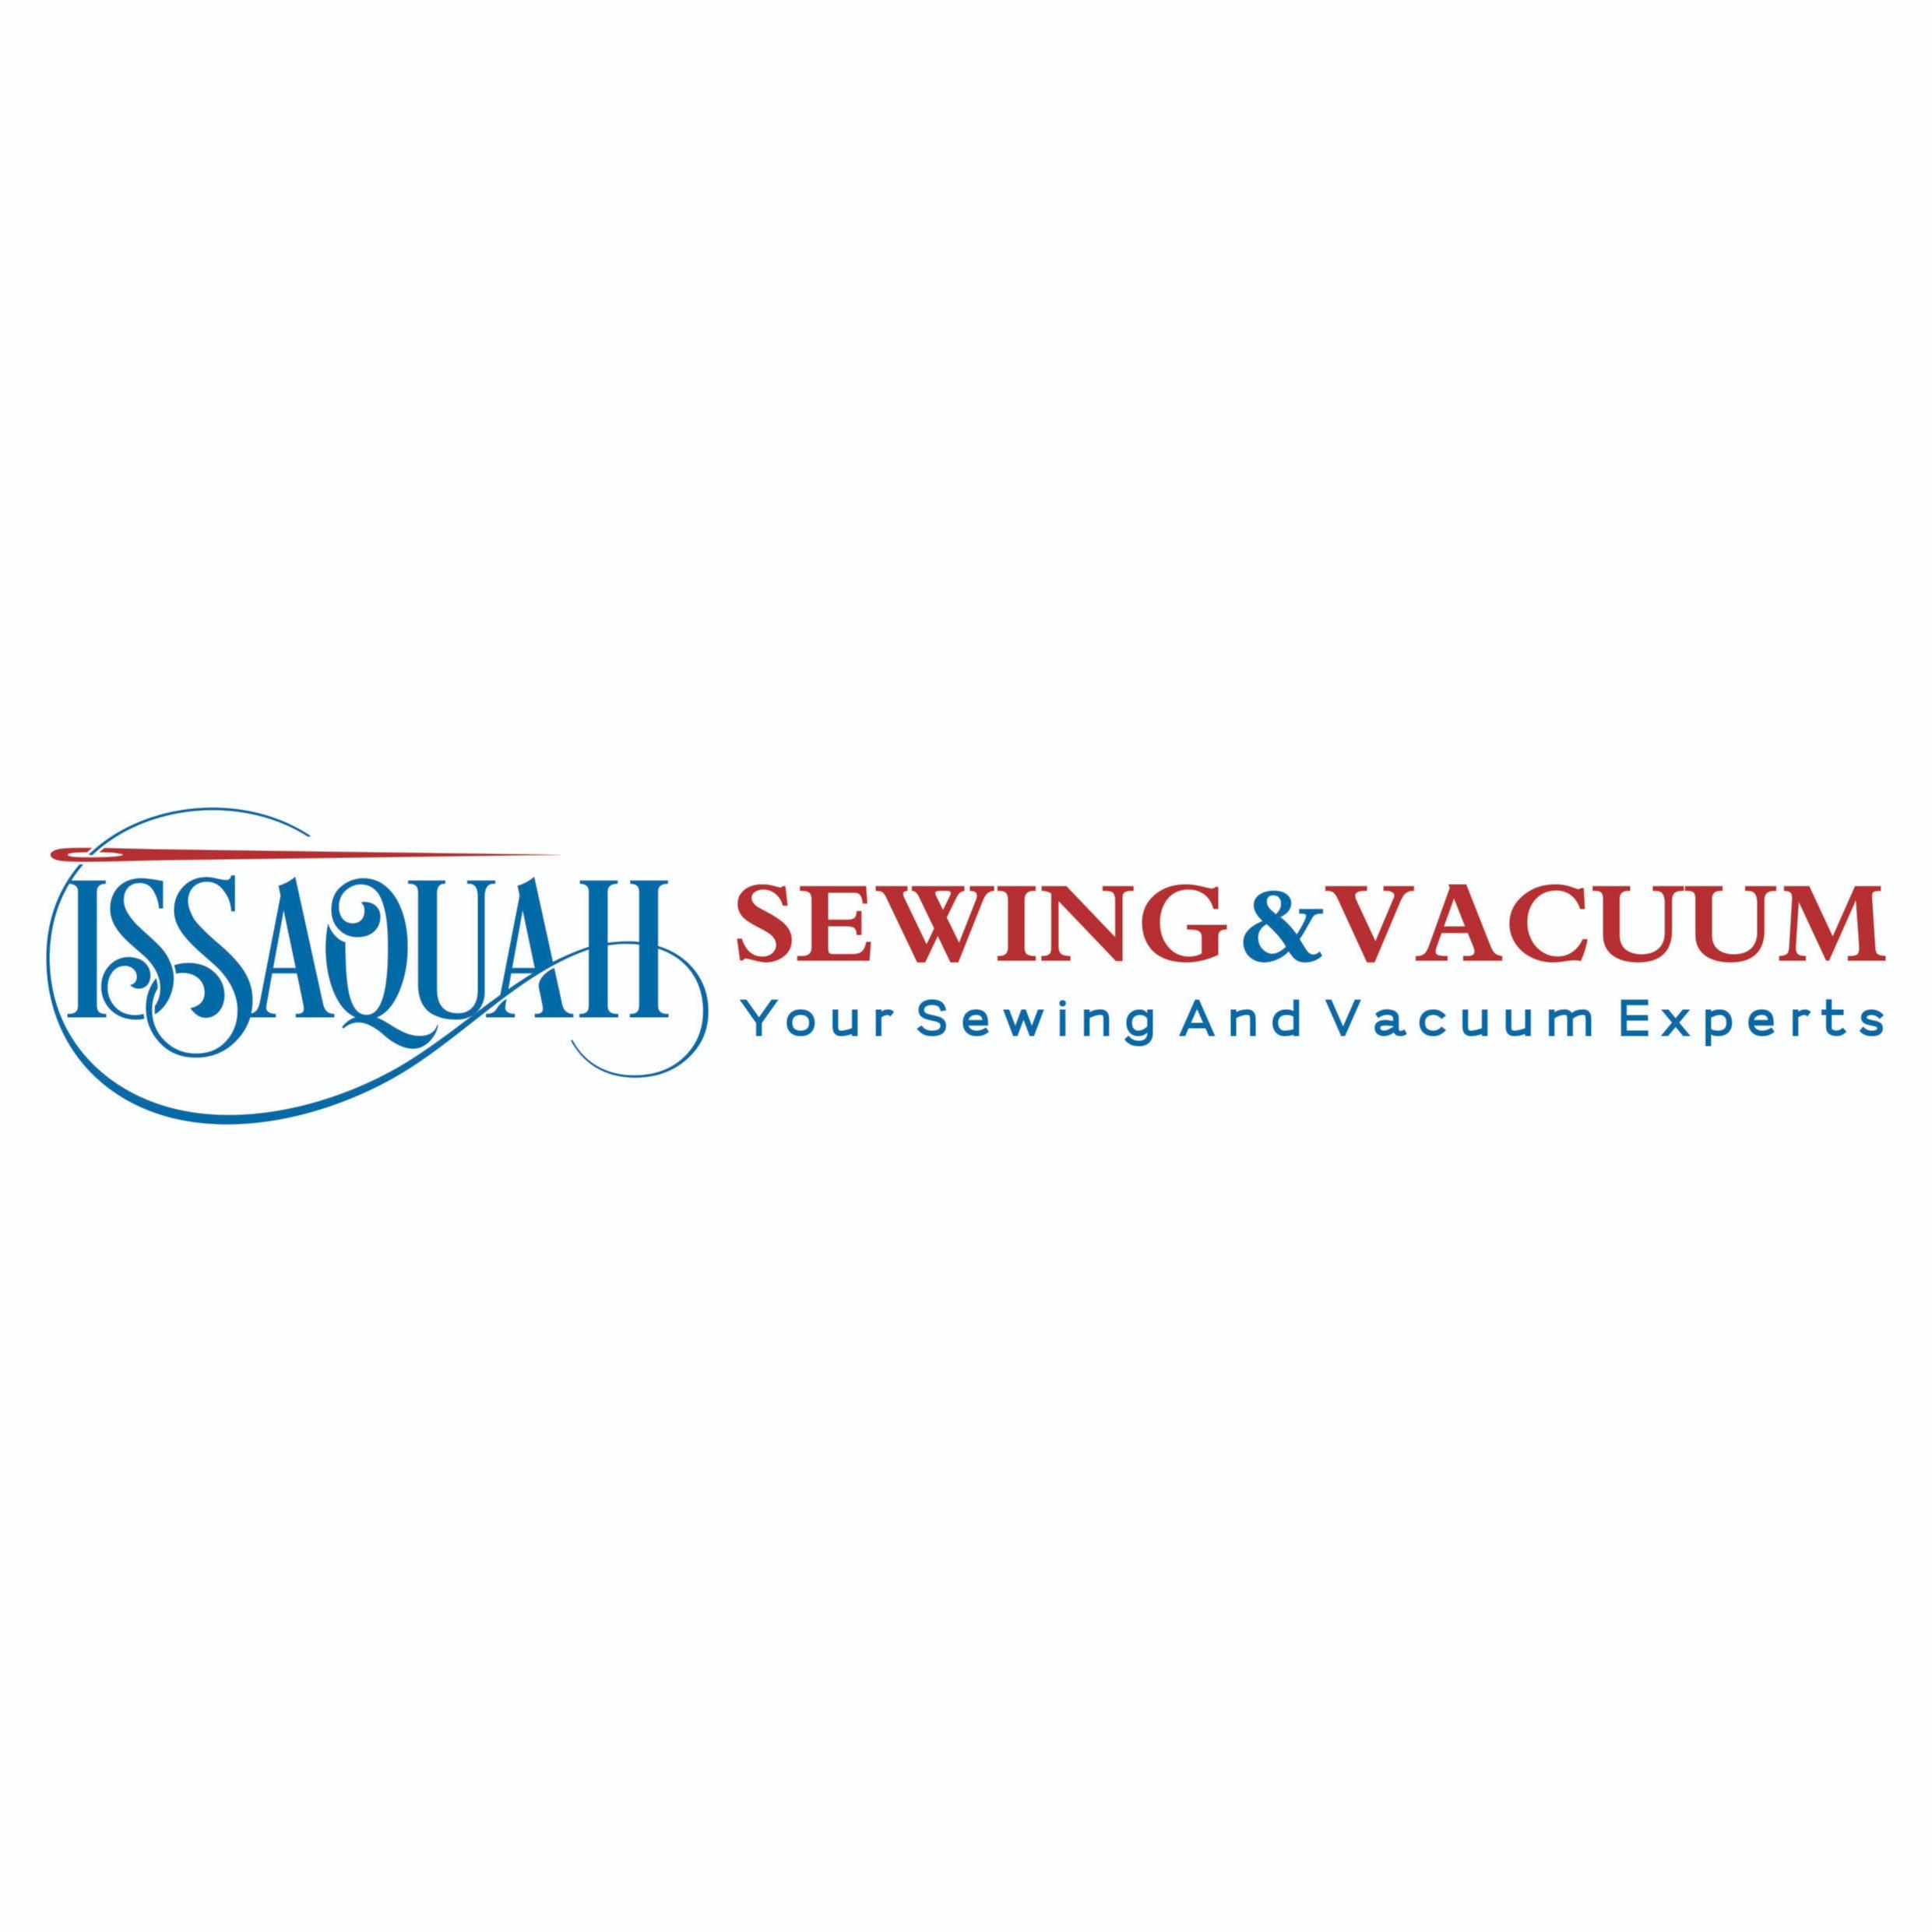 Issaquah Sewing & Vacuum